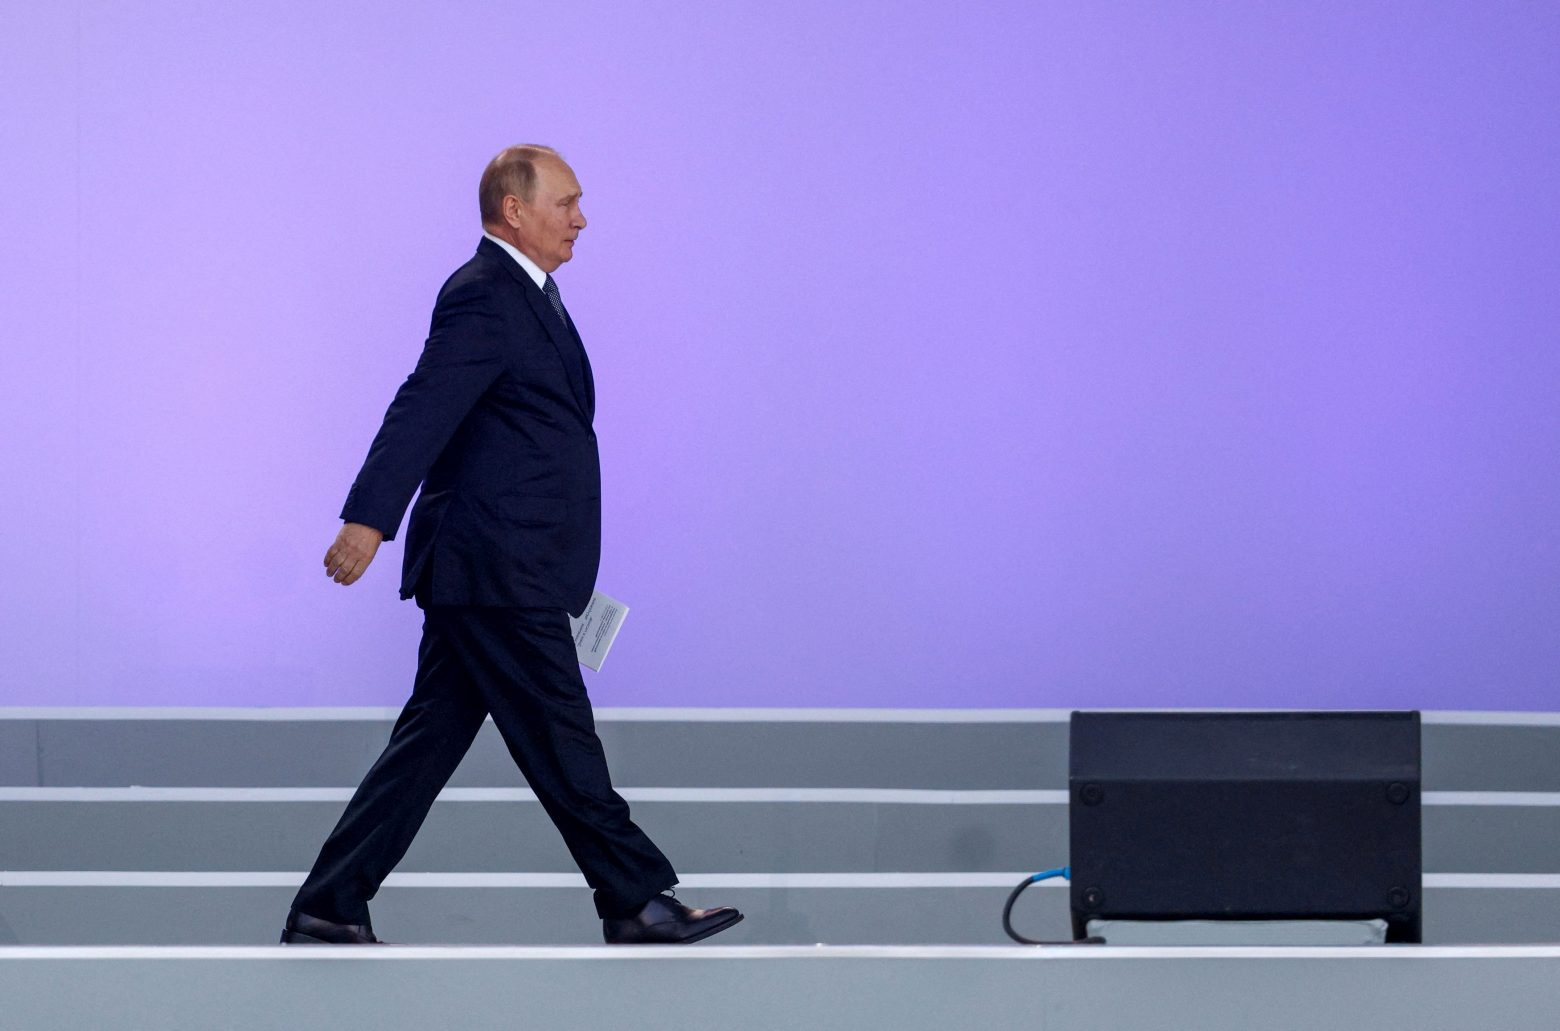 Ρωσία: Οι τρεις αδήλωτοι πόλεμοι του Βλαντίμιρ Πούτιν - Ετοιμάζει και τέταρτο;